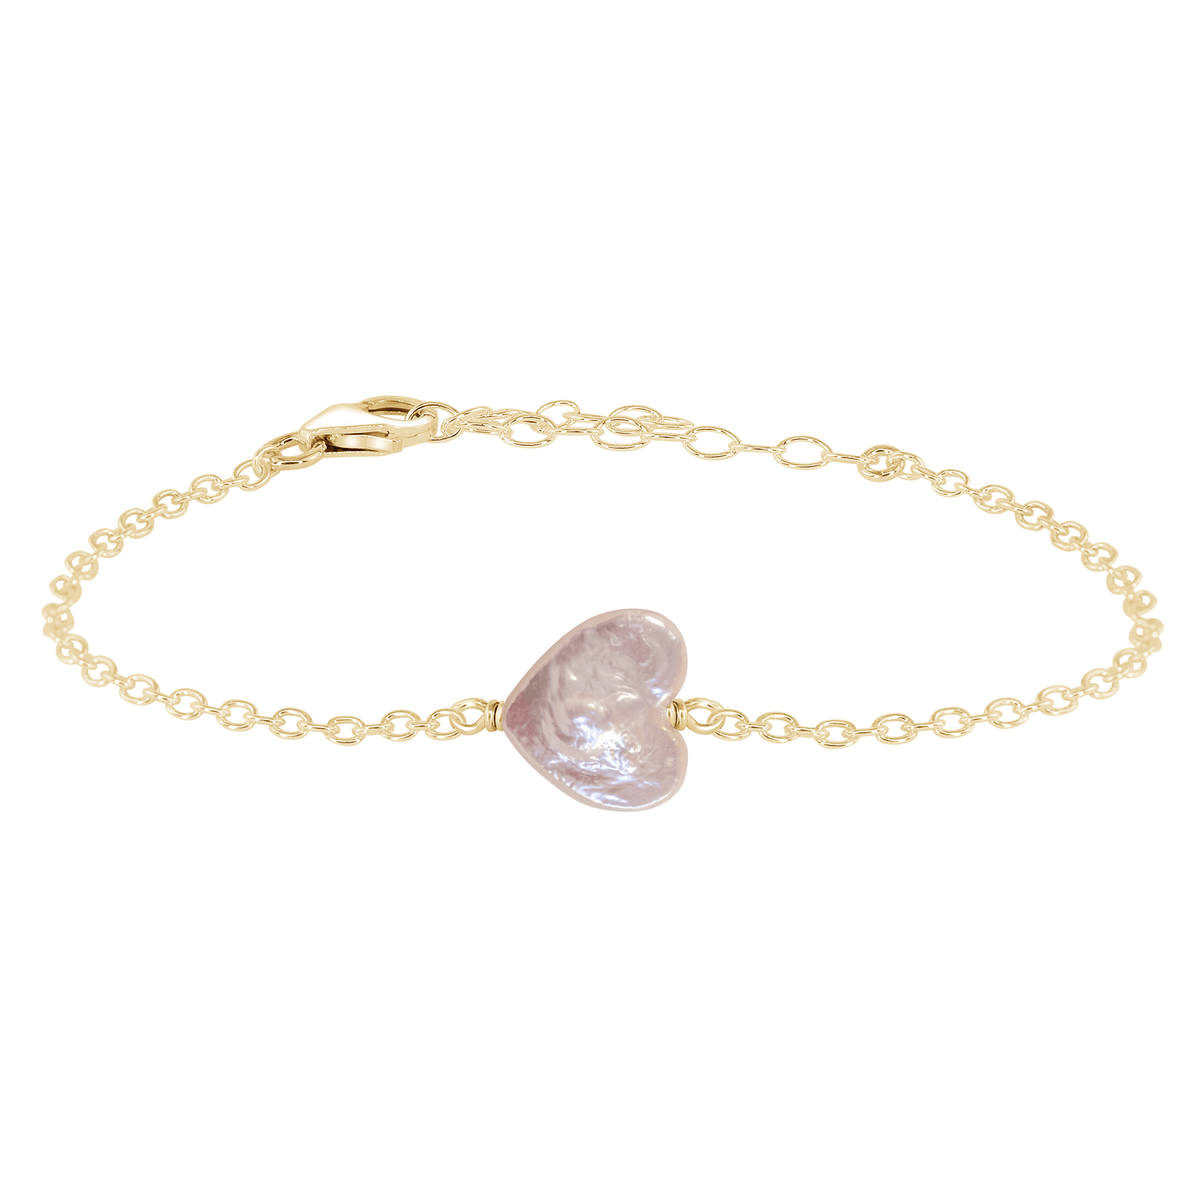 Freshwater Pearl Heart Bracelet - Freshwater Pearl Heart Bracelet - 14k Gold Fill - Luna Tide Handmade Crystal Jewellery